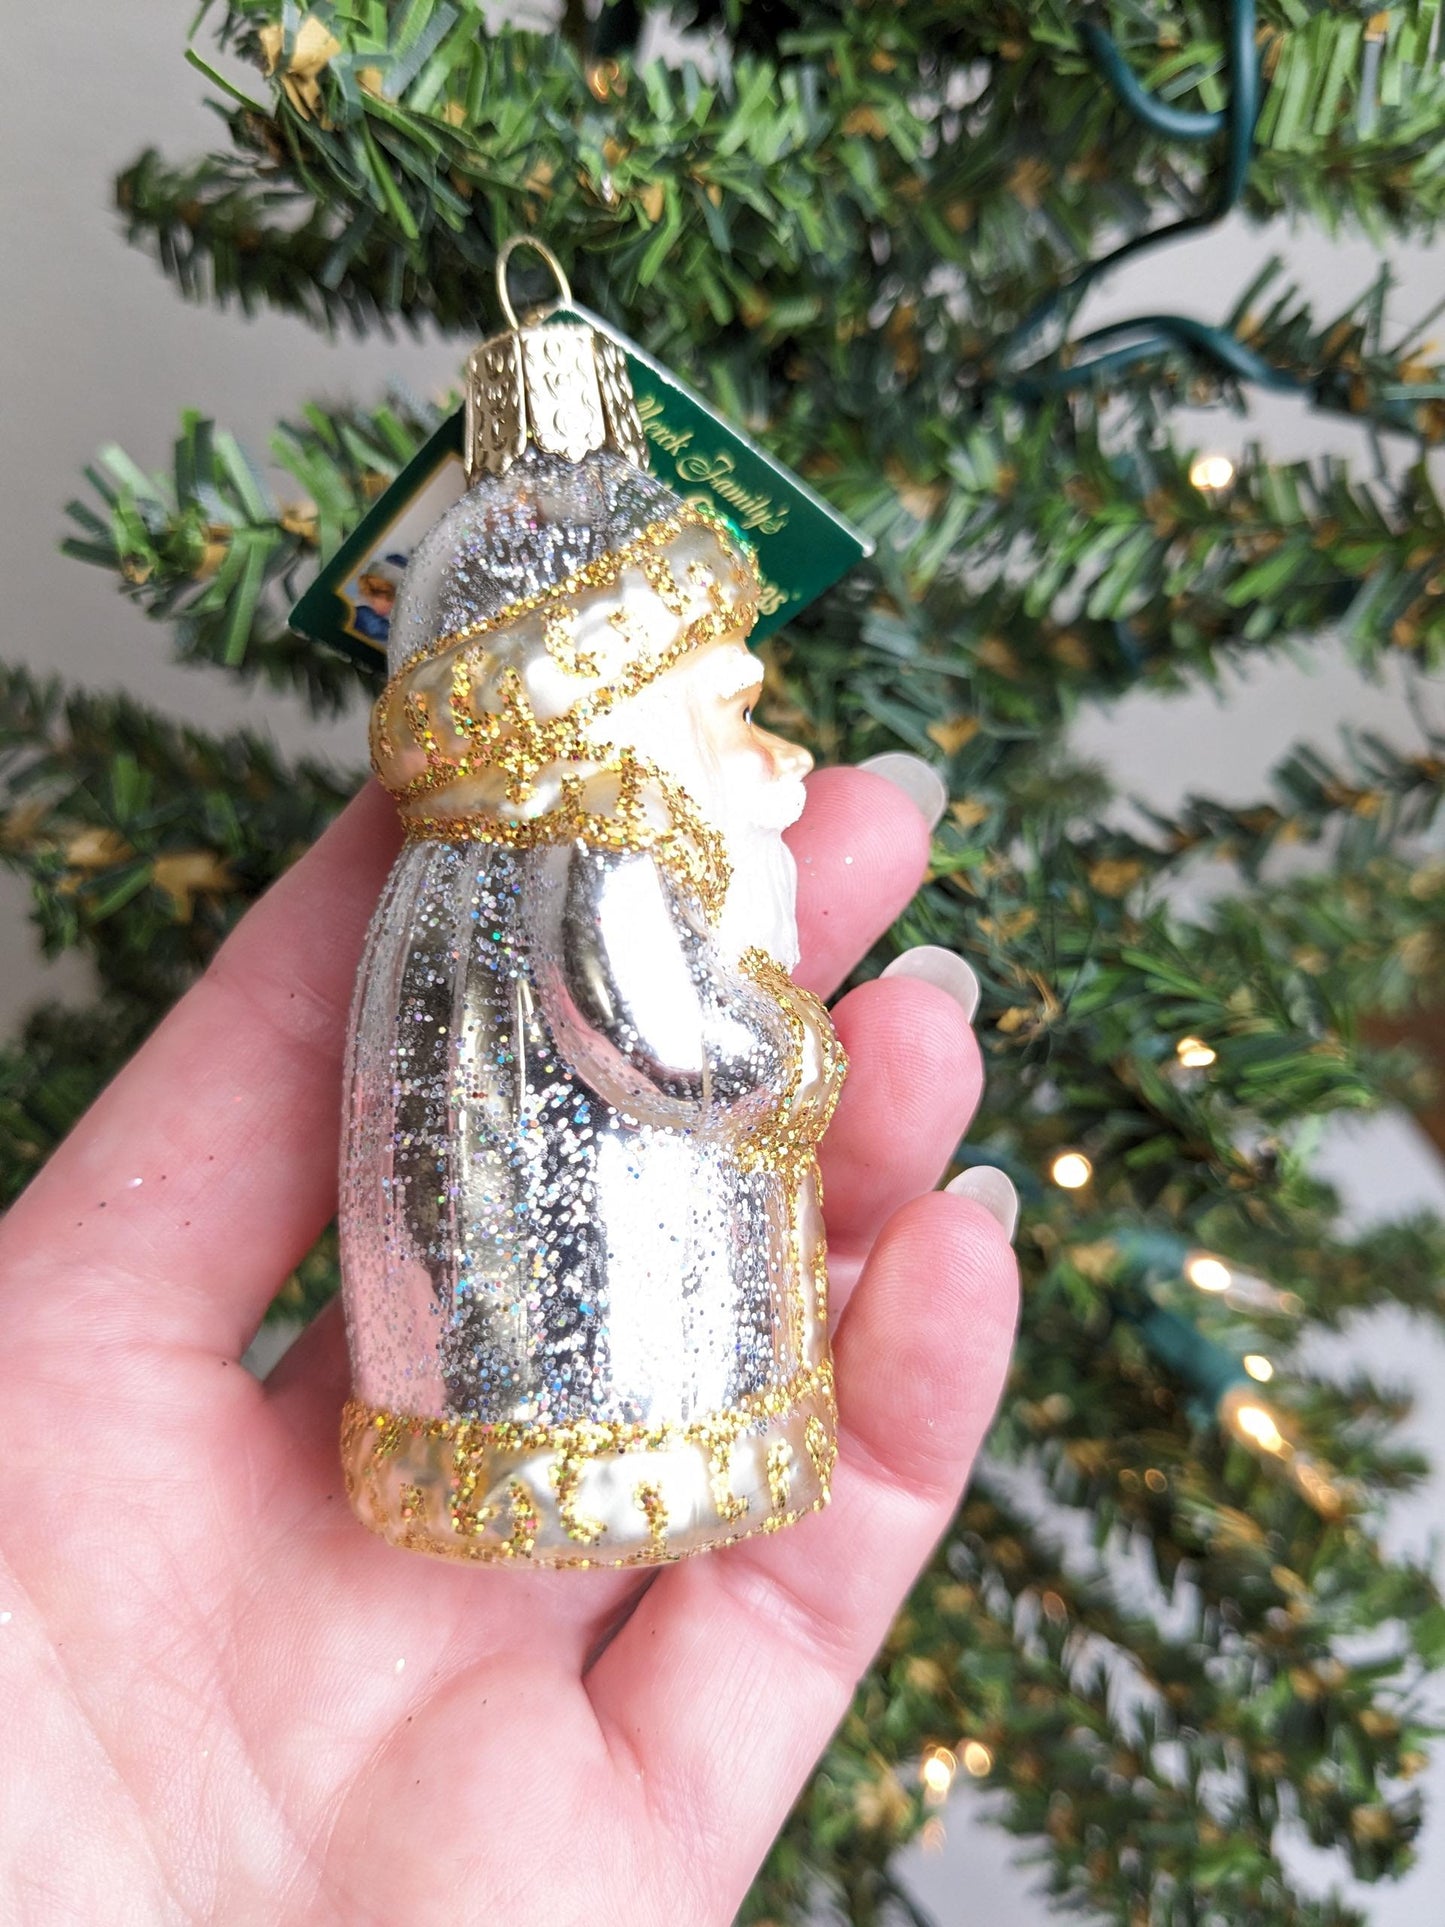 Golden Glitter Santa RETIRED Old World Christmas Ornament